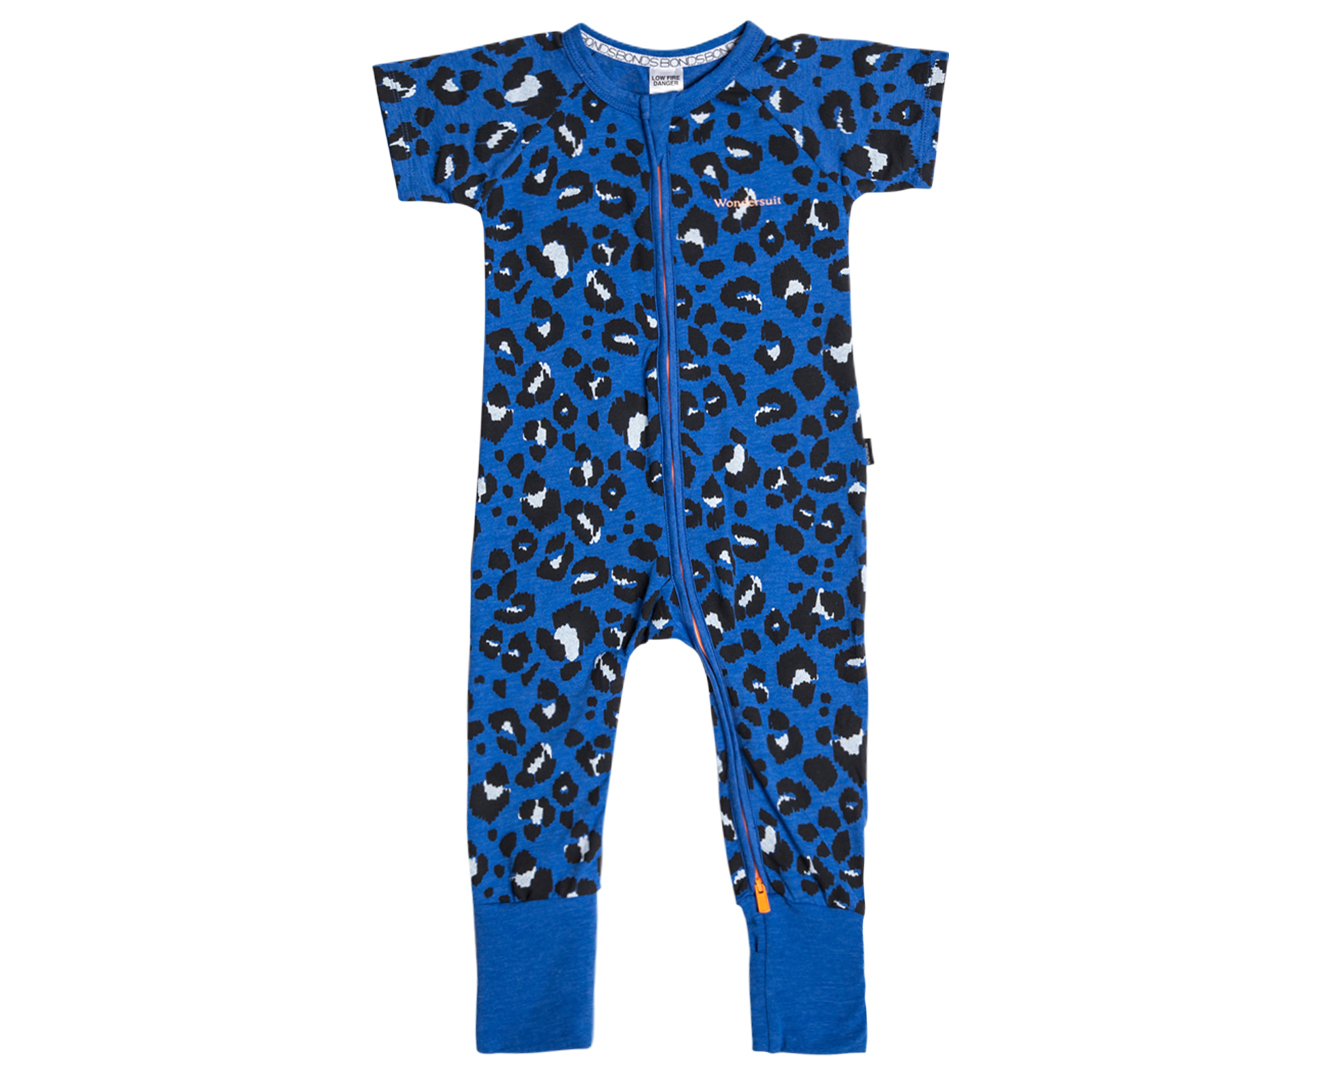 Bonds Baby Leopard Print Zip Wondersuit - Blue/White/Black | Mumgo.com.au